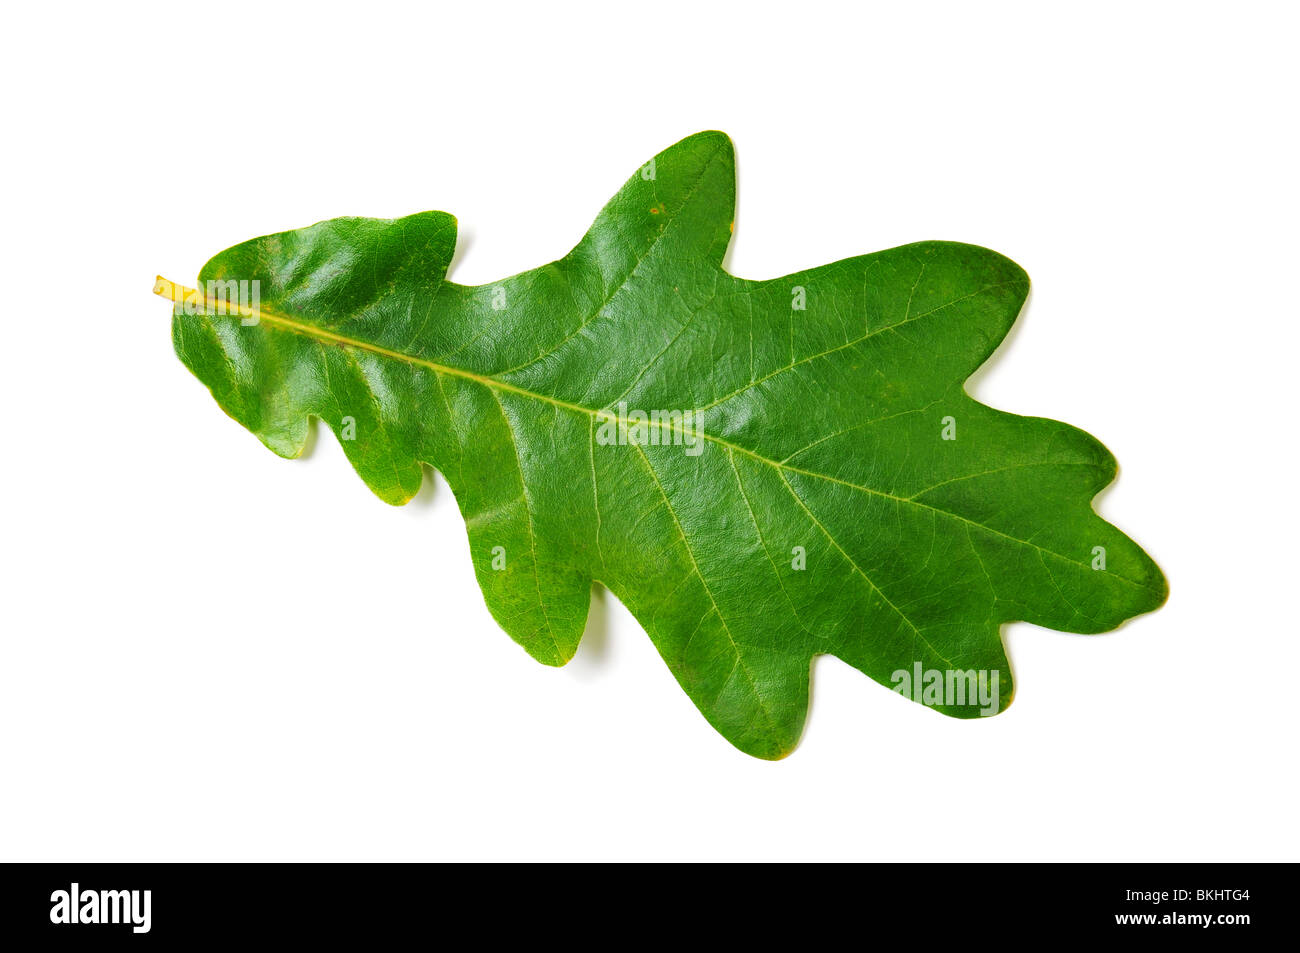 Green oak leaf on white background. Isolated image Stock Photo